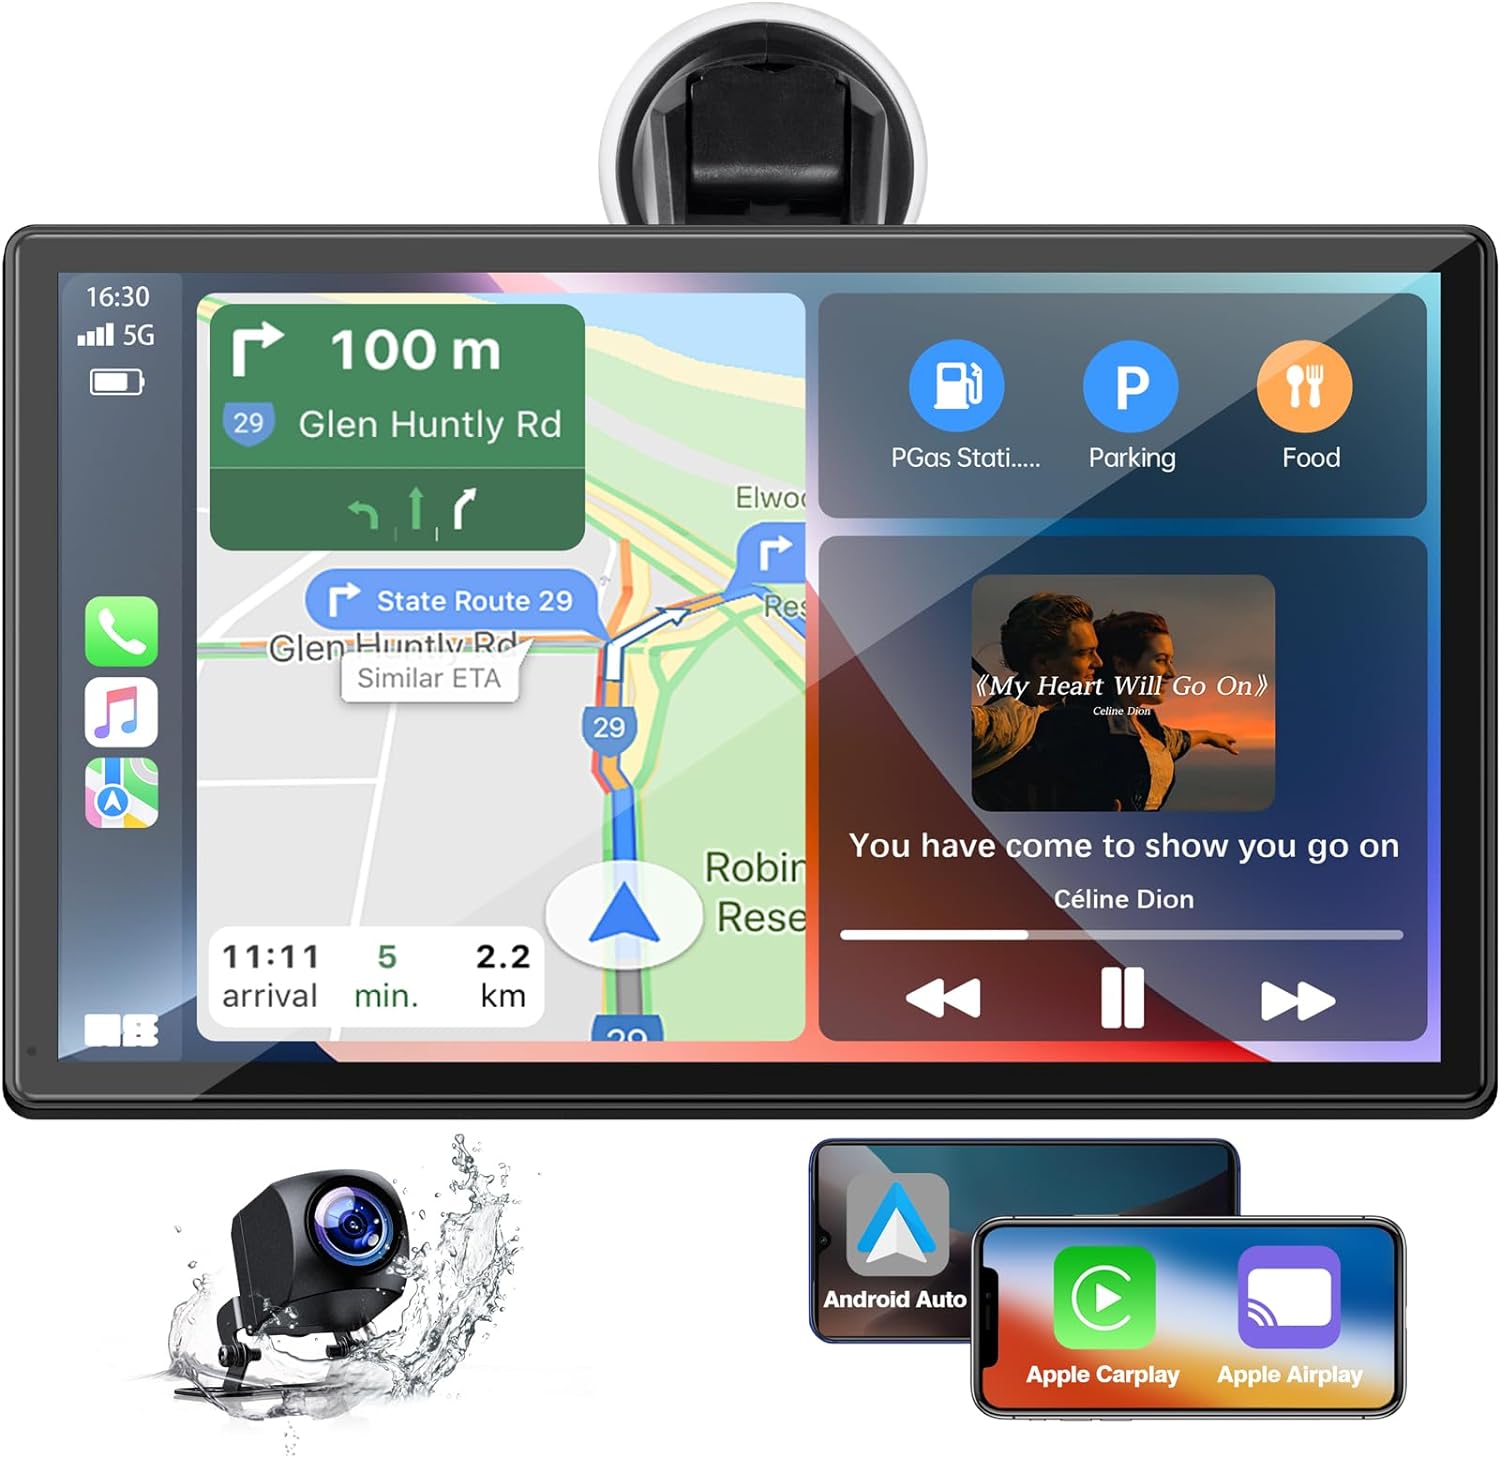 Système audio stéréo de voiture - Apple Carplay, Android auto, écran  tactile, l'audio Bluetooth/unité de